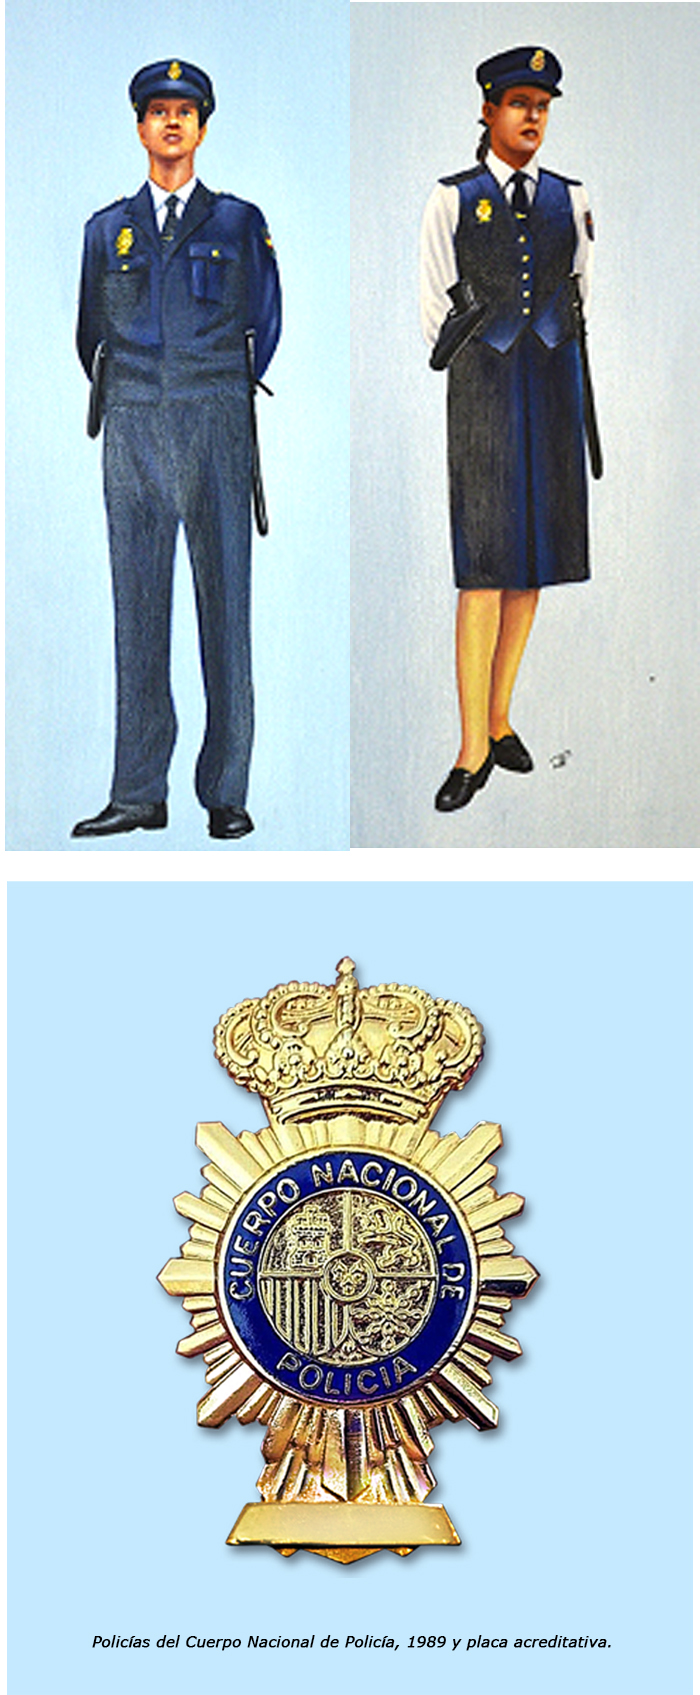 Policías del Cuerpo Nacional de Policía, 1989 y placa acreditativa.